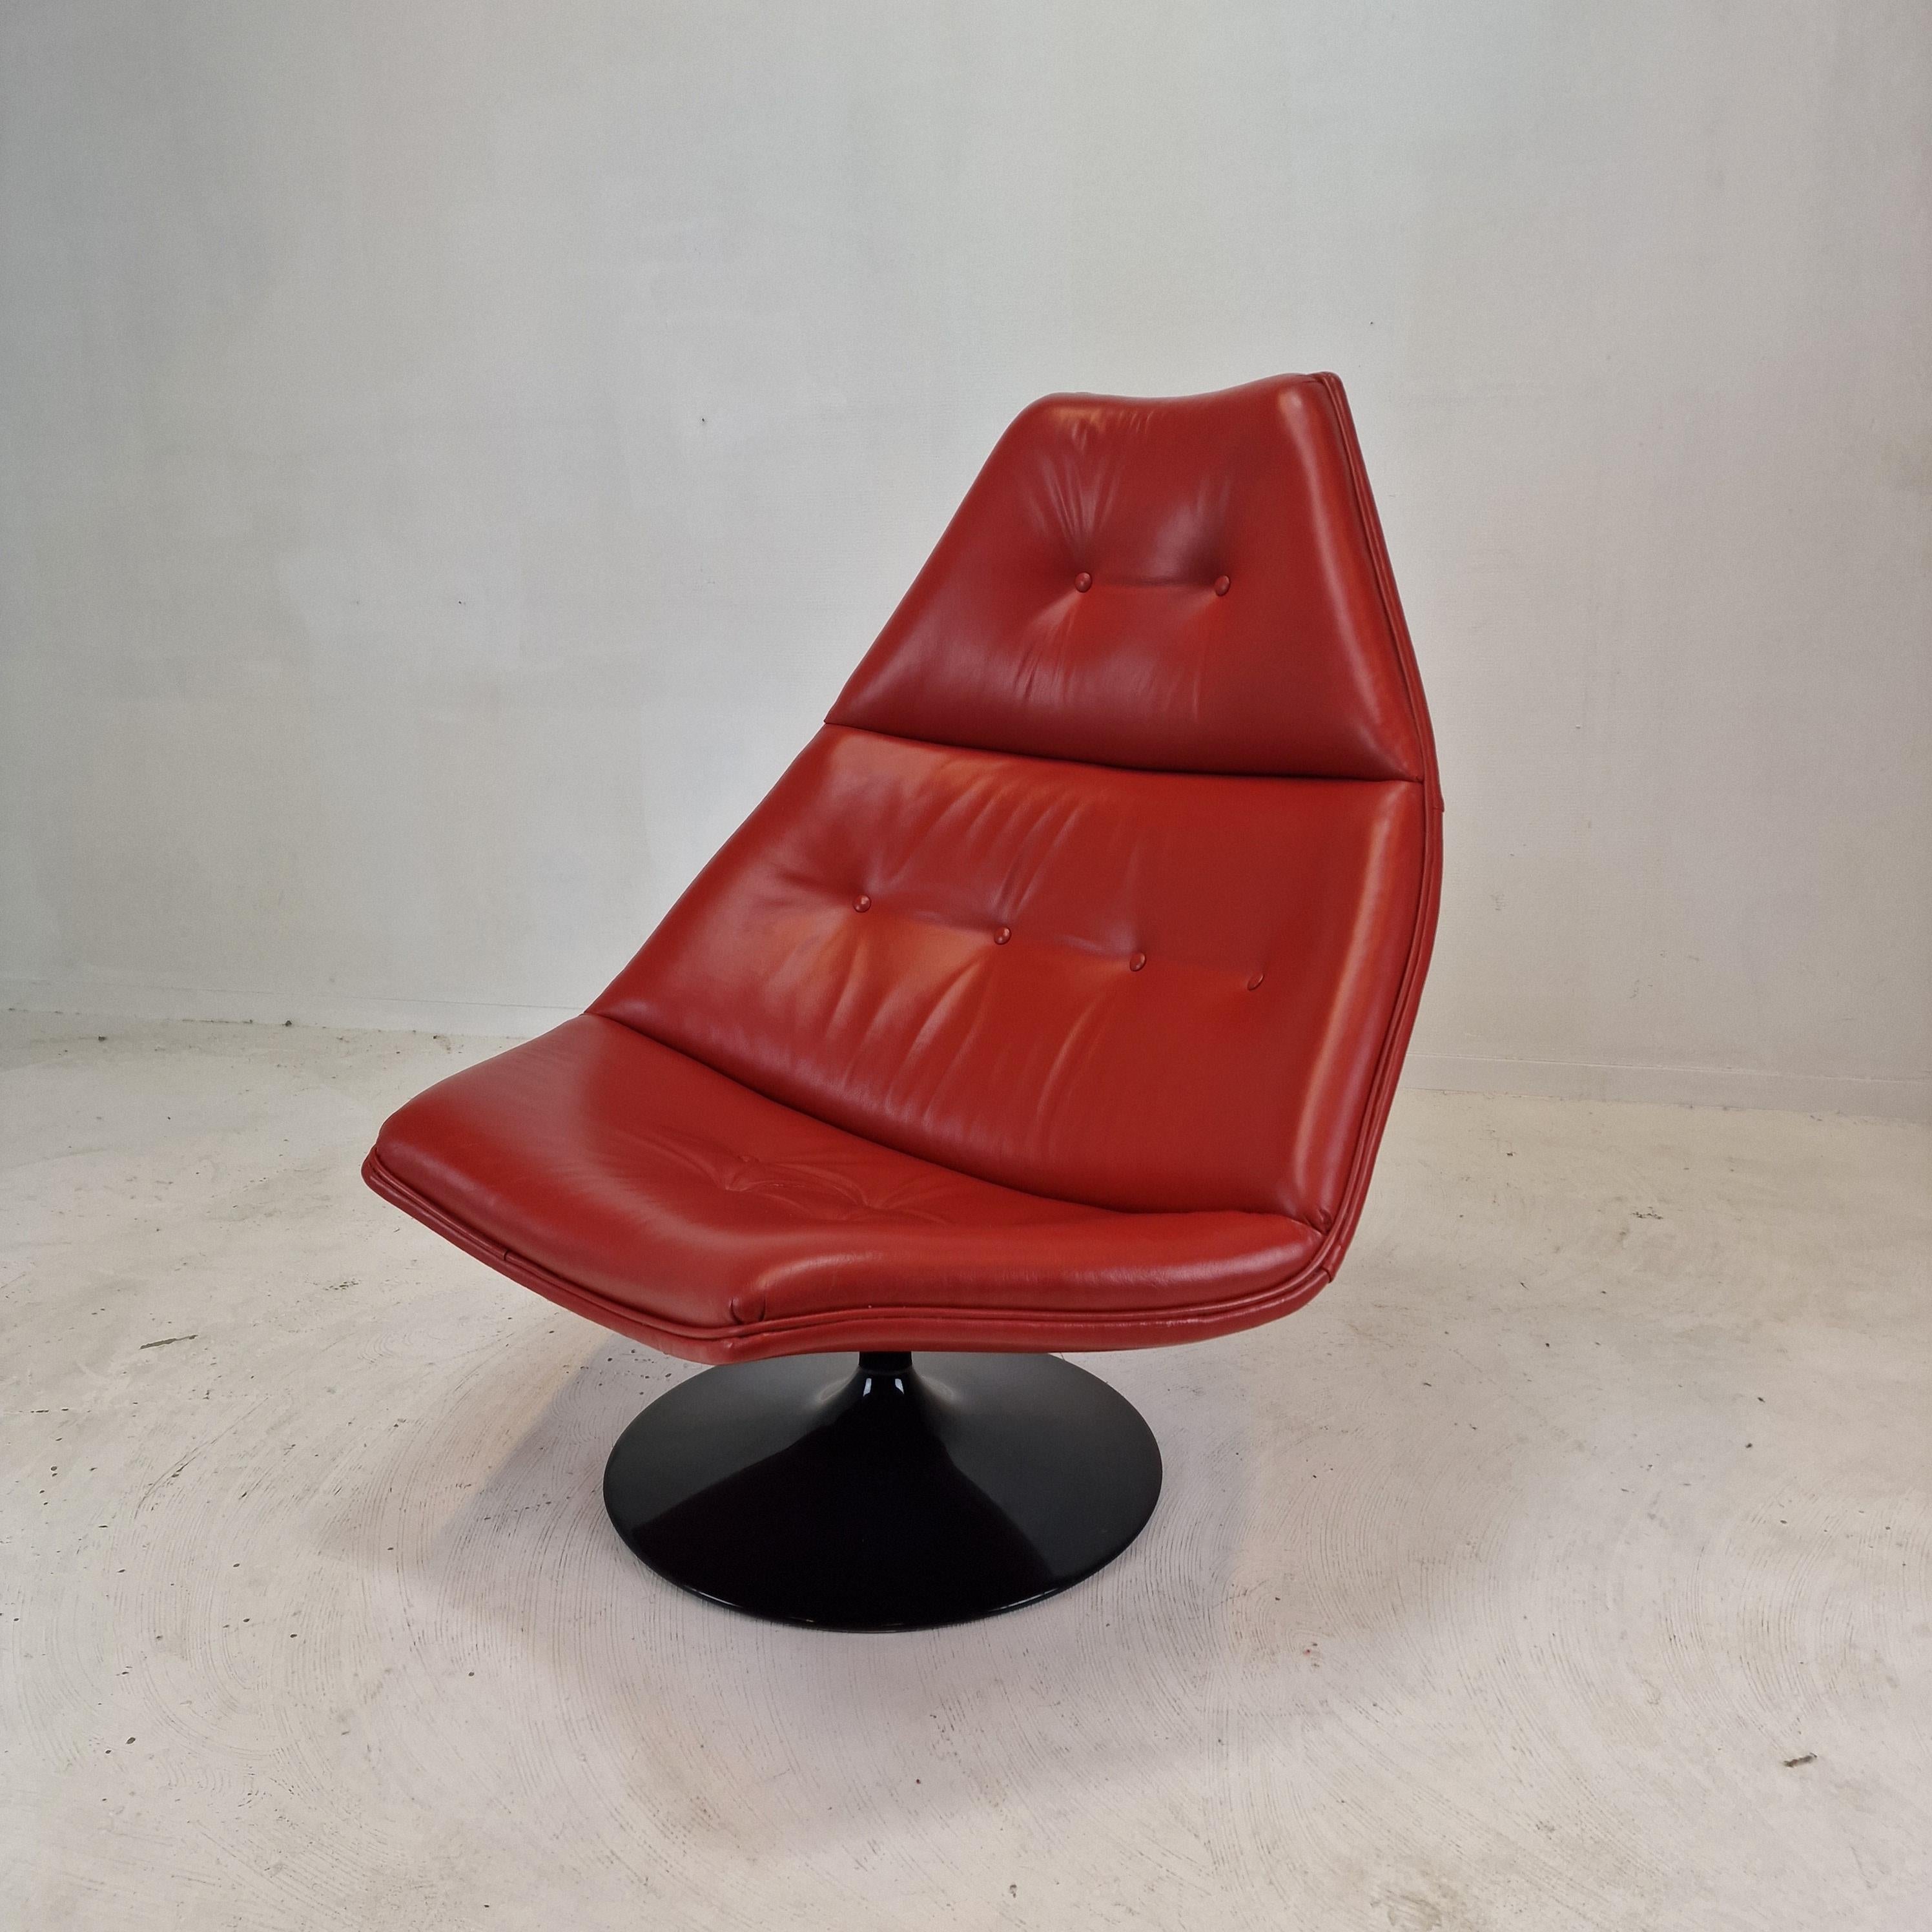 Sehr bequemer Artifort F510 Loungesessel. 
Entworfen von dem berühmten englischen Designer Geoffrey Harcourt in den 70er Jahren. 

Sehr stabiler Holzrahmen mit einem großen drehbaren Metallfuß.

Der Stuhl hat hohe Qualität Leder, Farbe rot.
Das